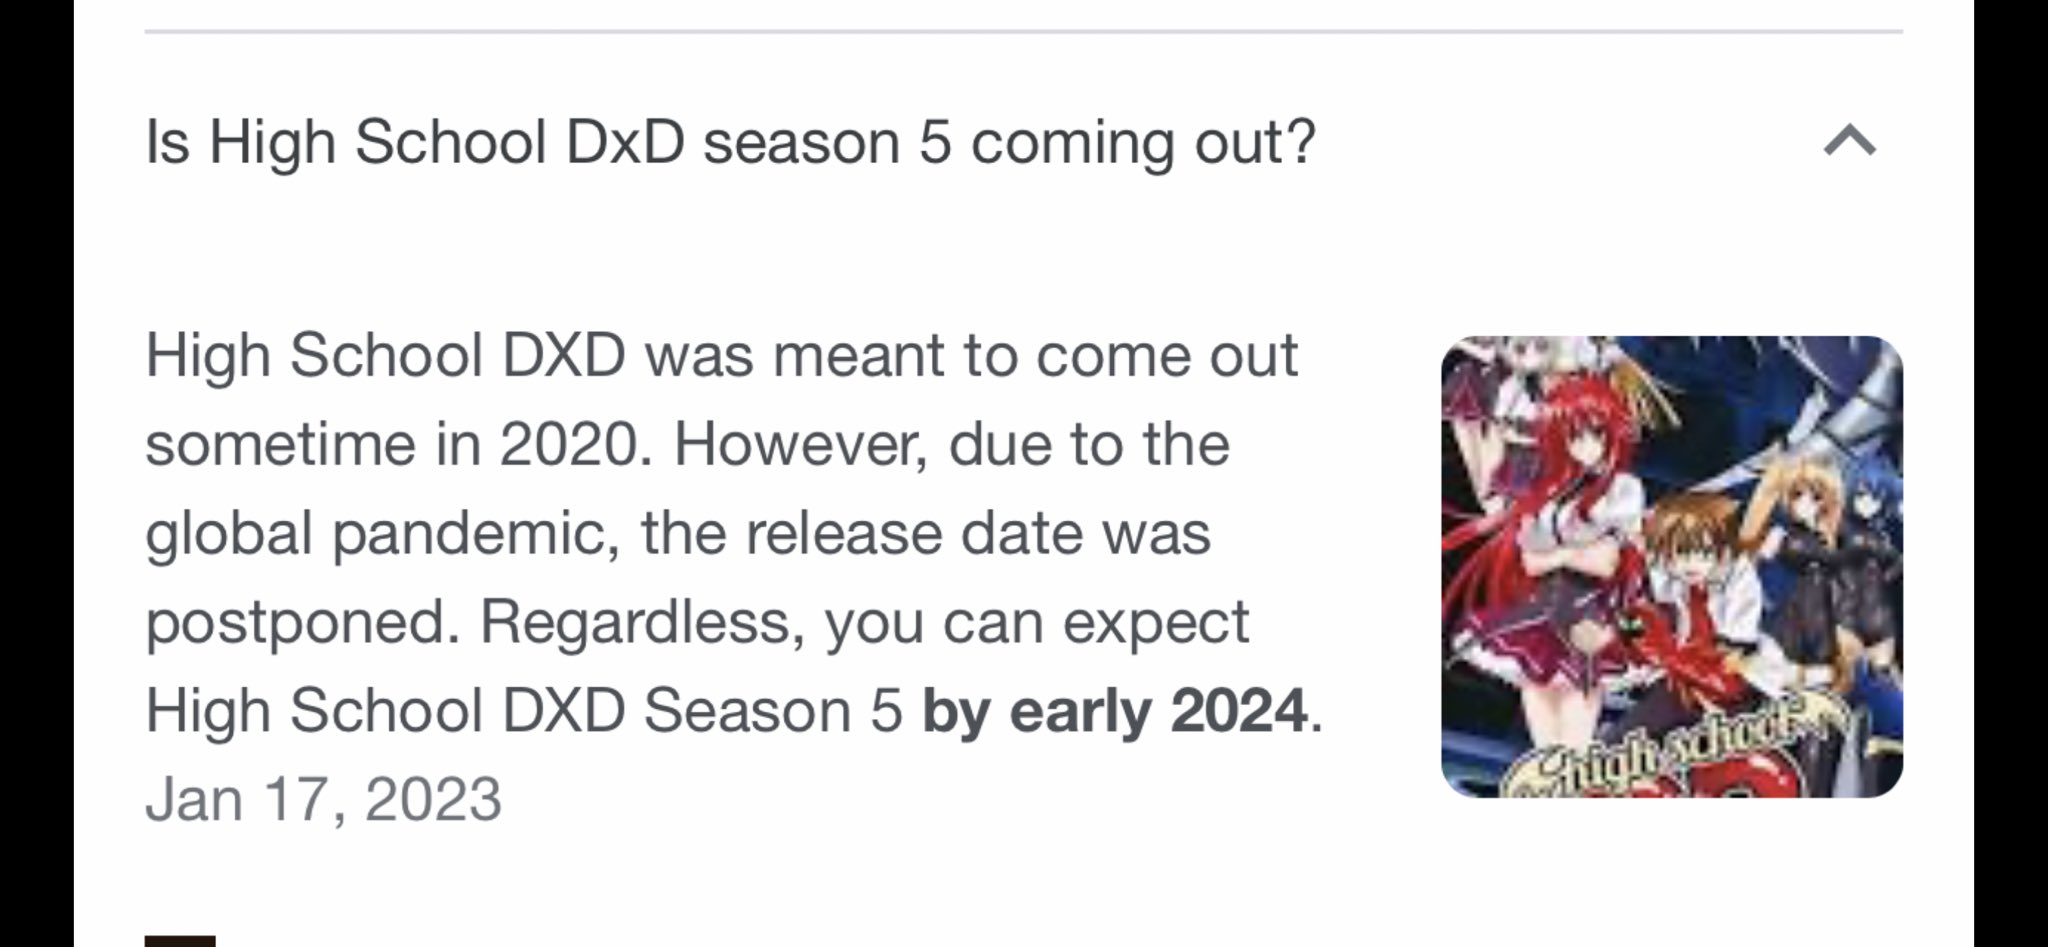 High School DxD Season 5 Release Date, News, Trailer in 2023